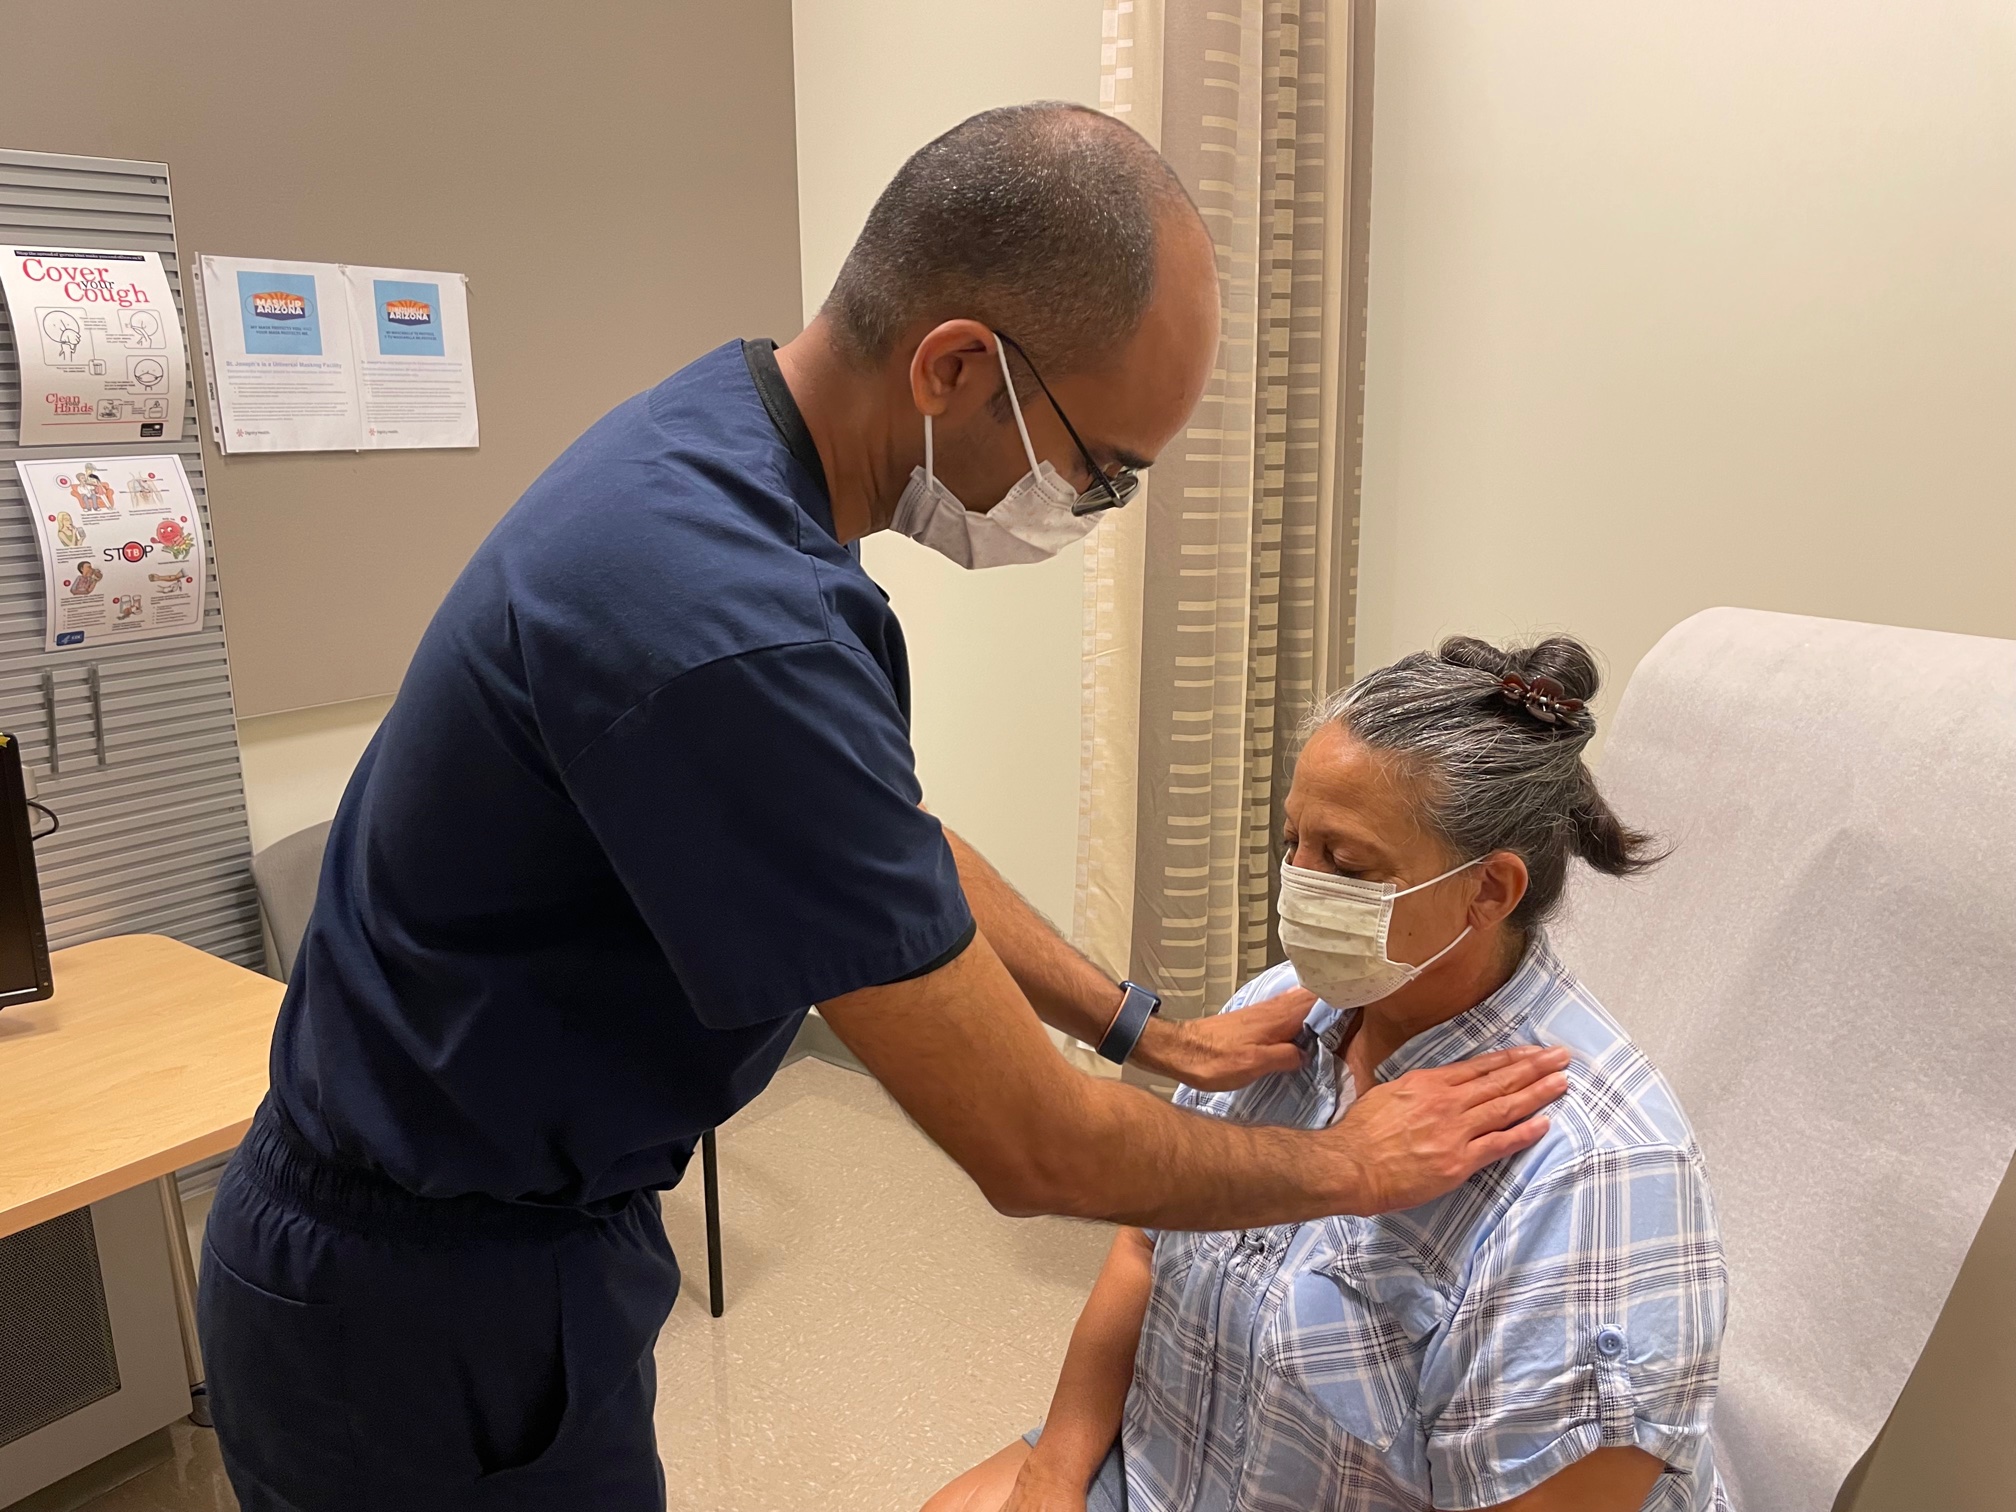 Dr. Torri examines patient